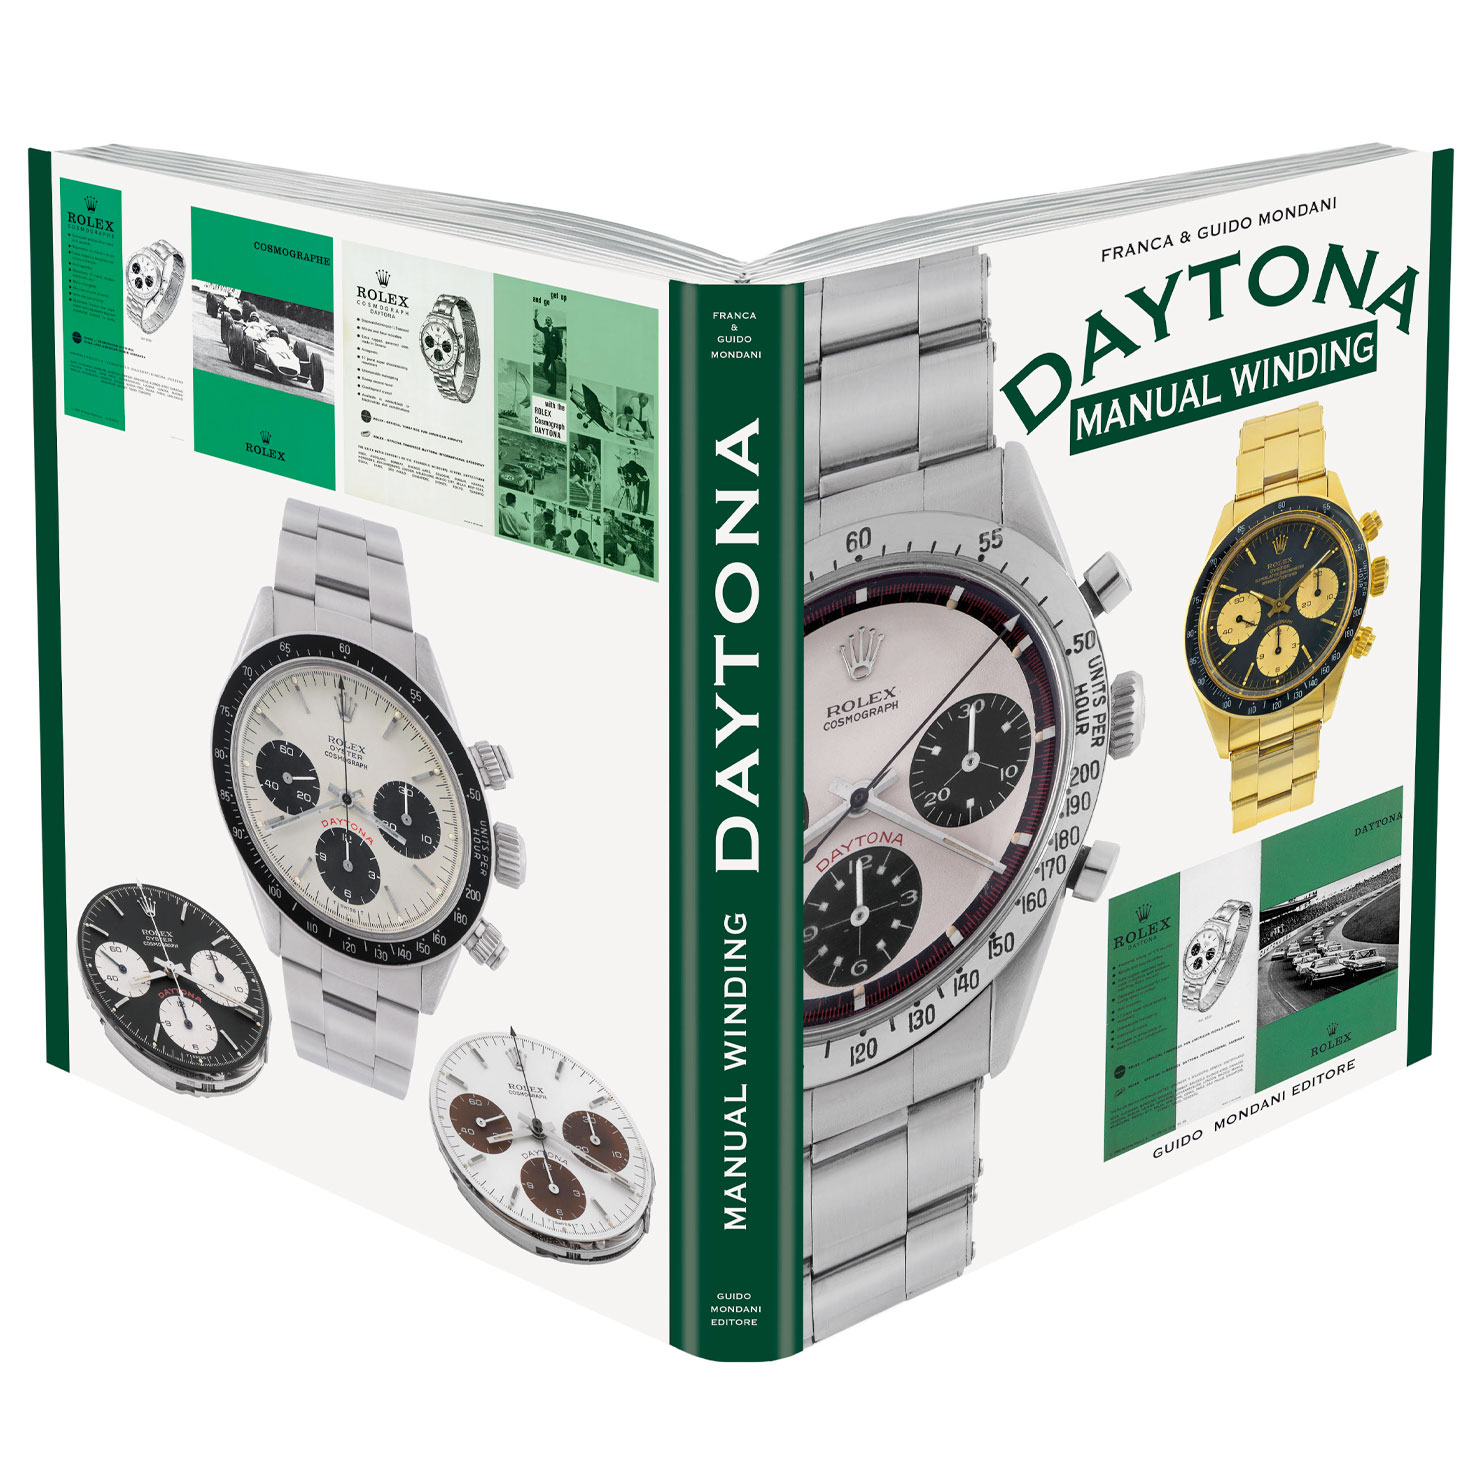 Mondani – Rolex Daytona Manual Winding